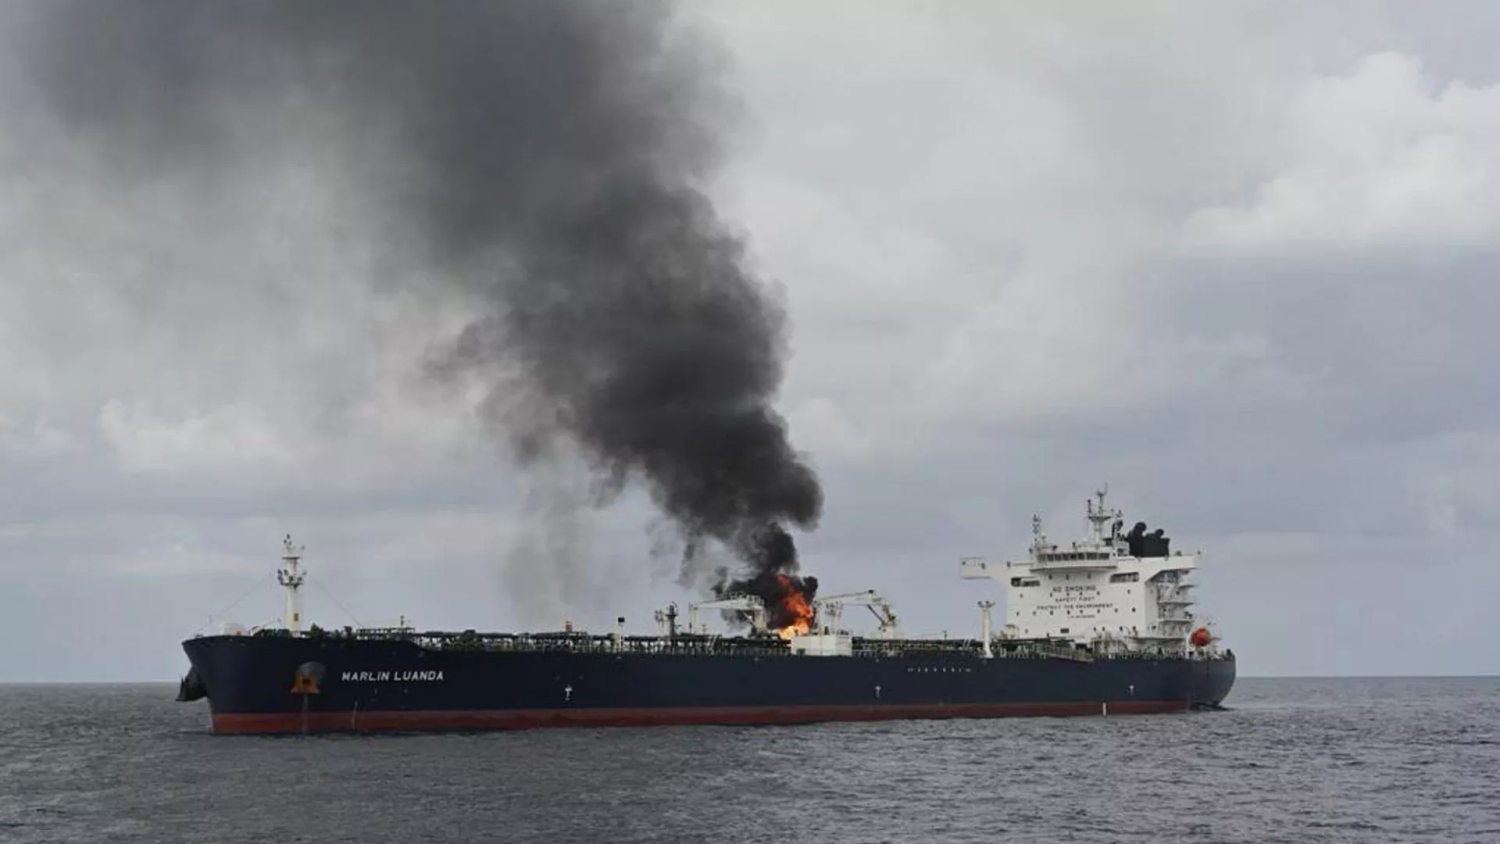 هيئة بحرية بريطانية: انفجار قرب سفينة تجارية شرقي عدن